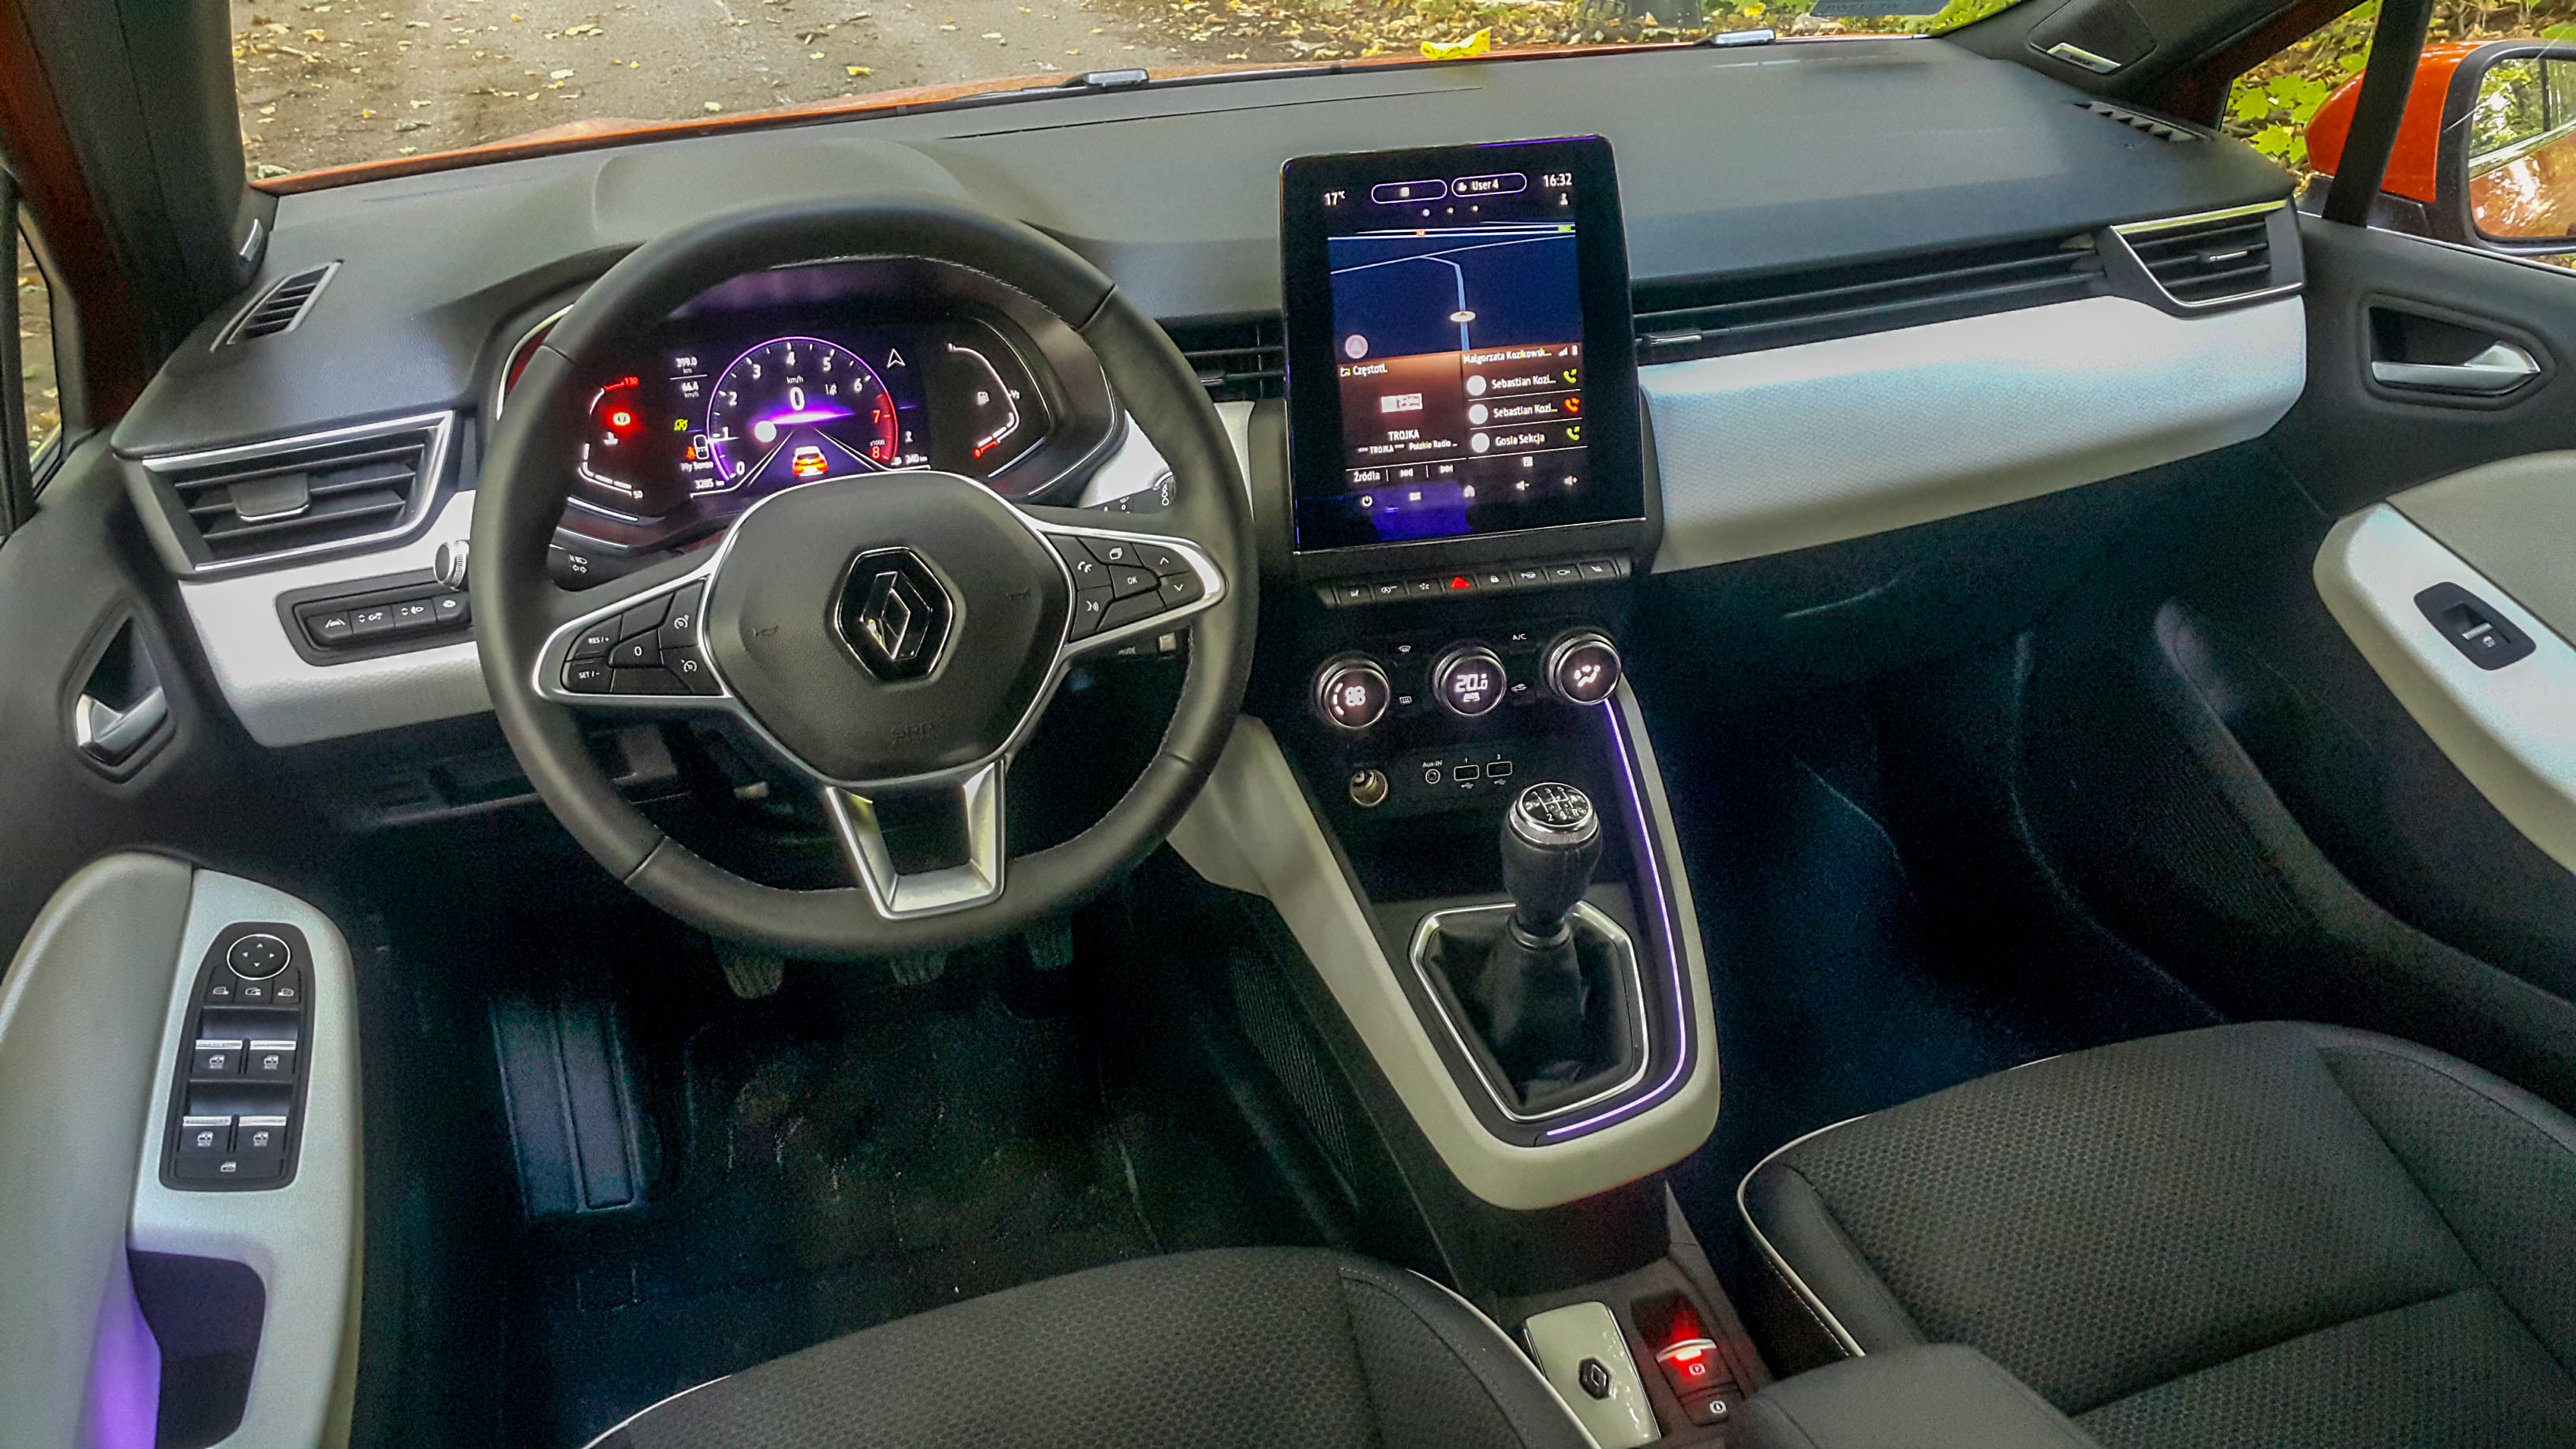 Renault Clio - wnętrze